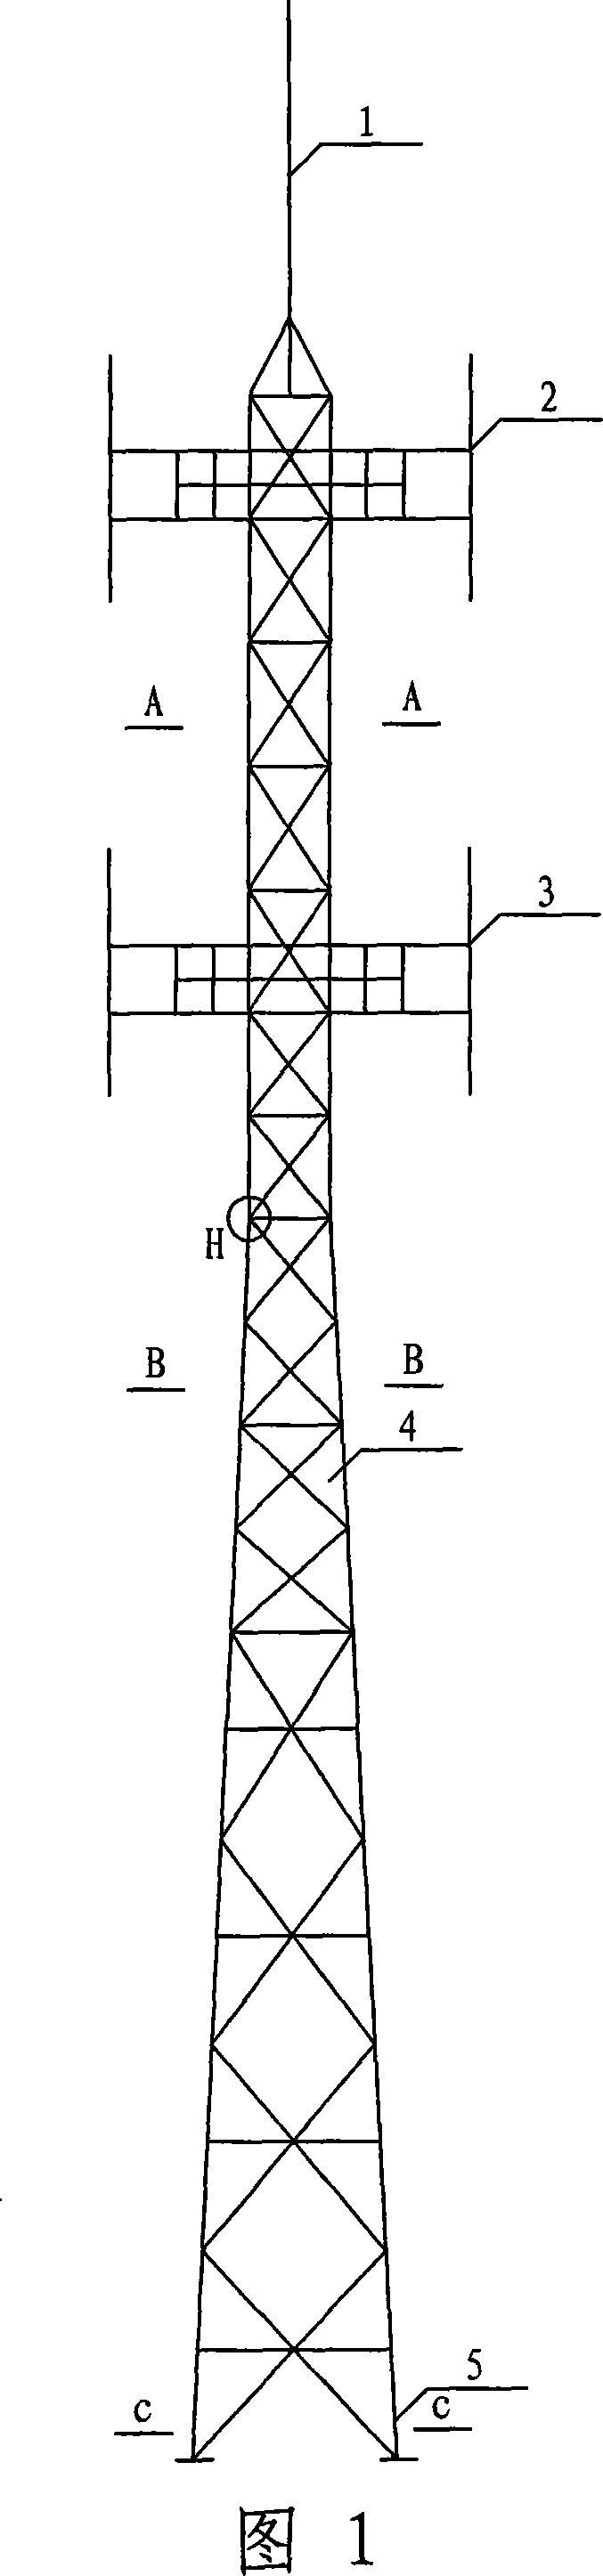 Triangular communication tower